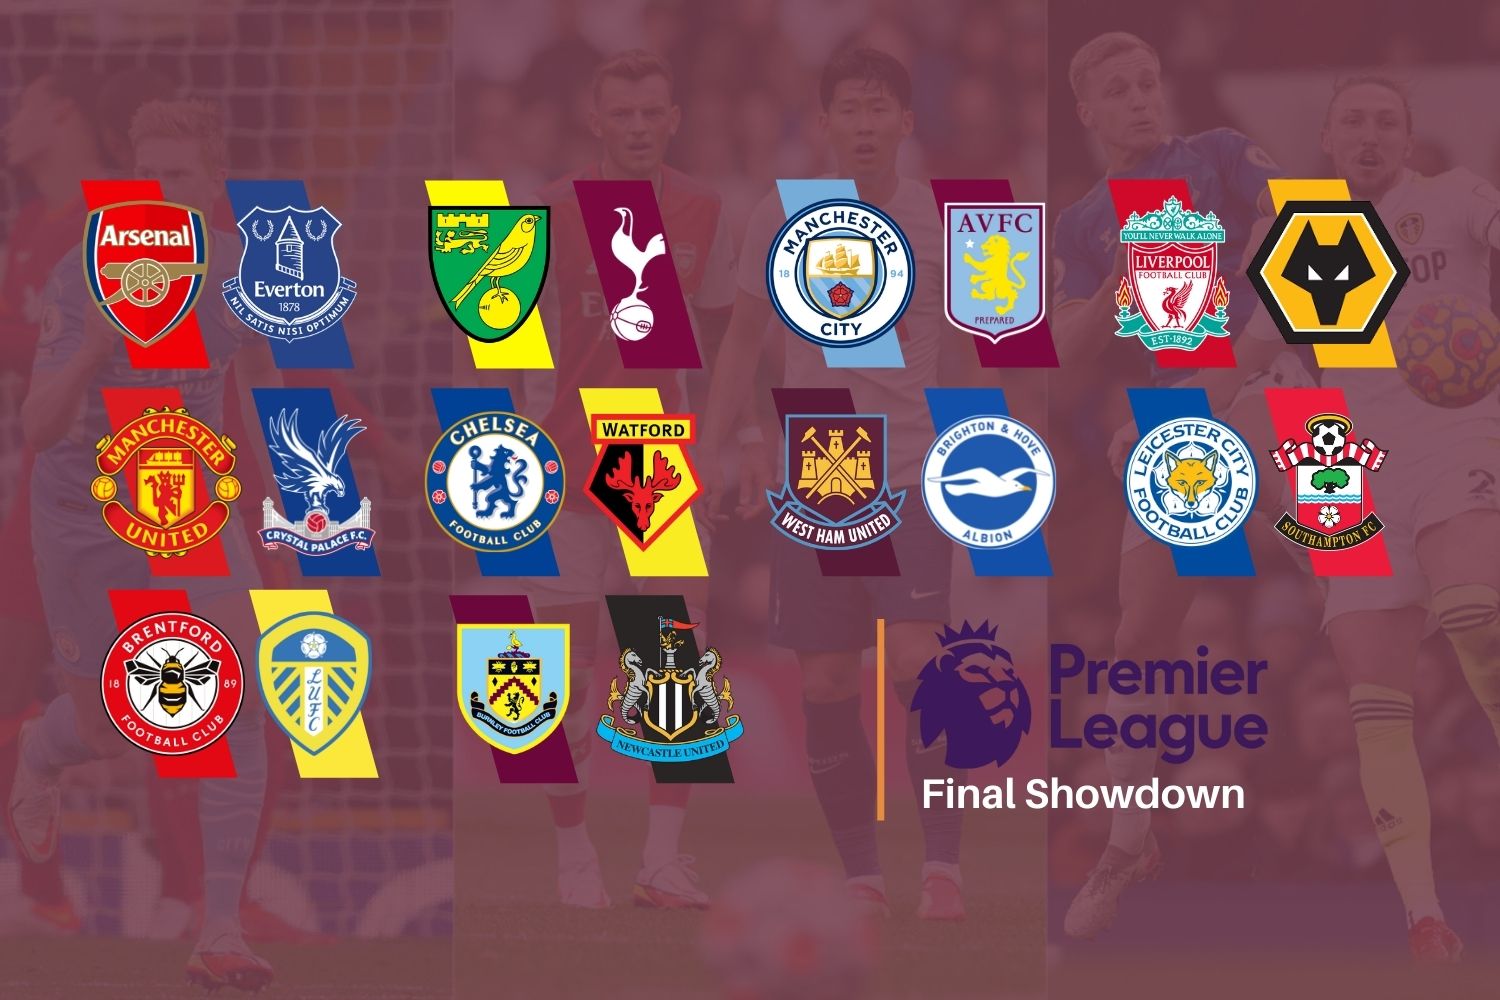 The Premier League final showdown